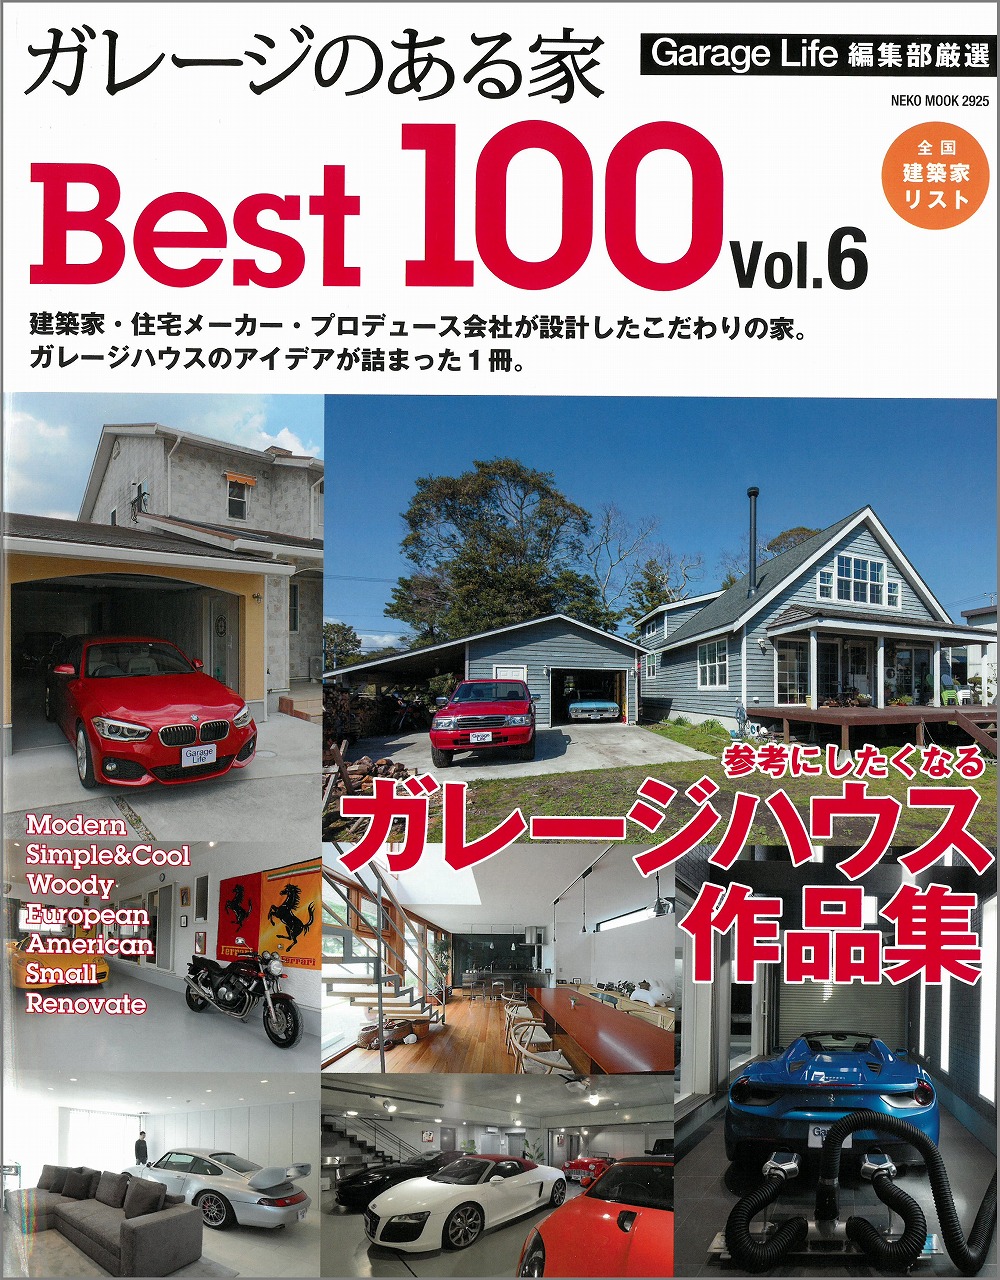 雑誌「ガレージのある家BEST100 Vol.6 」に掲載されました